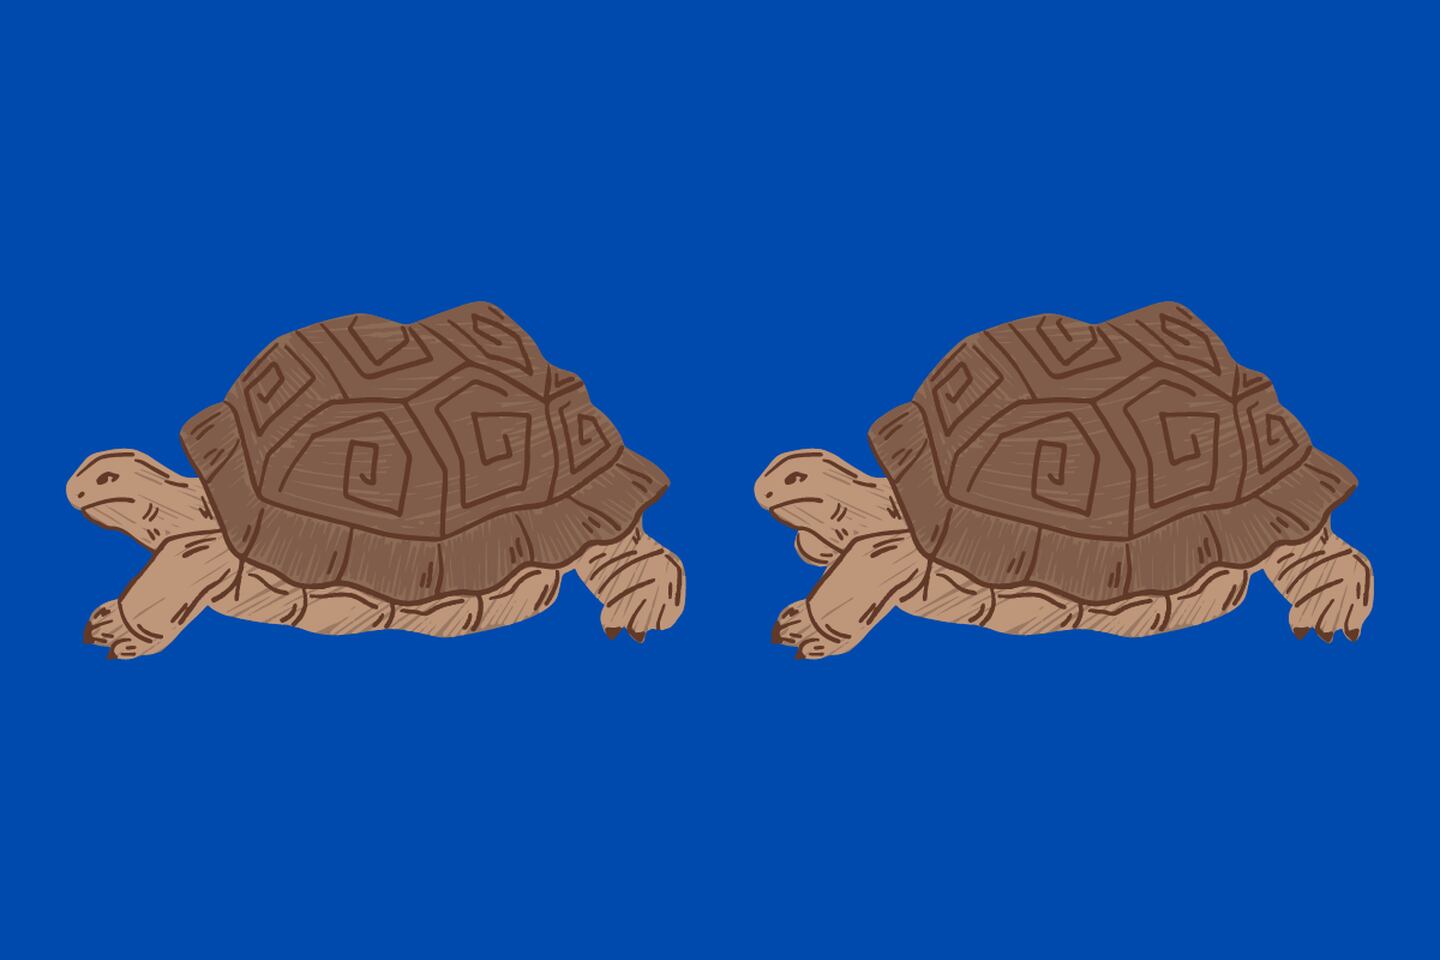 dos tortugas que parecen iguales, pero tienen cuatro sutiles diferencias.